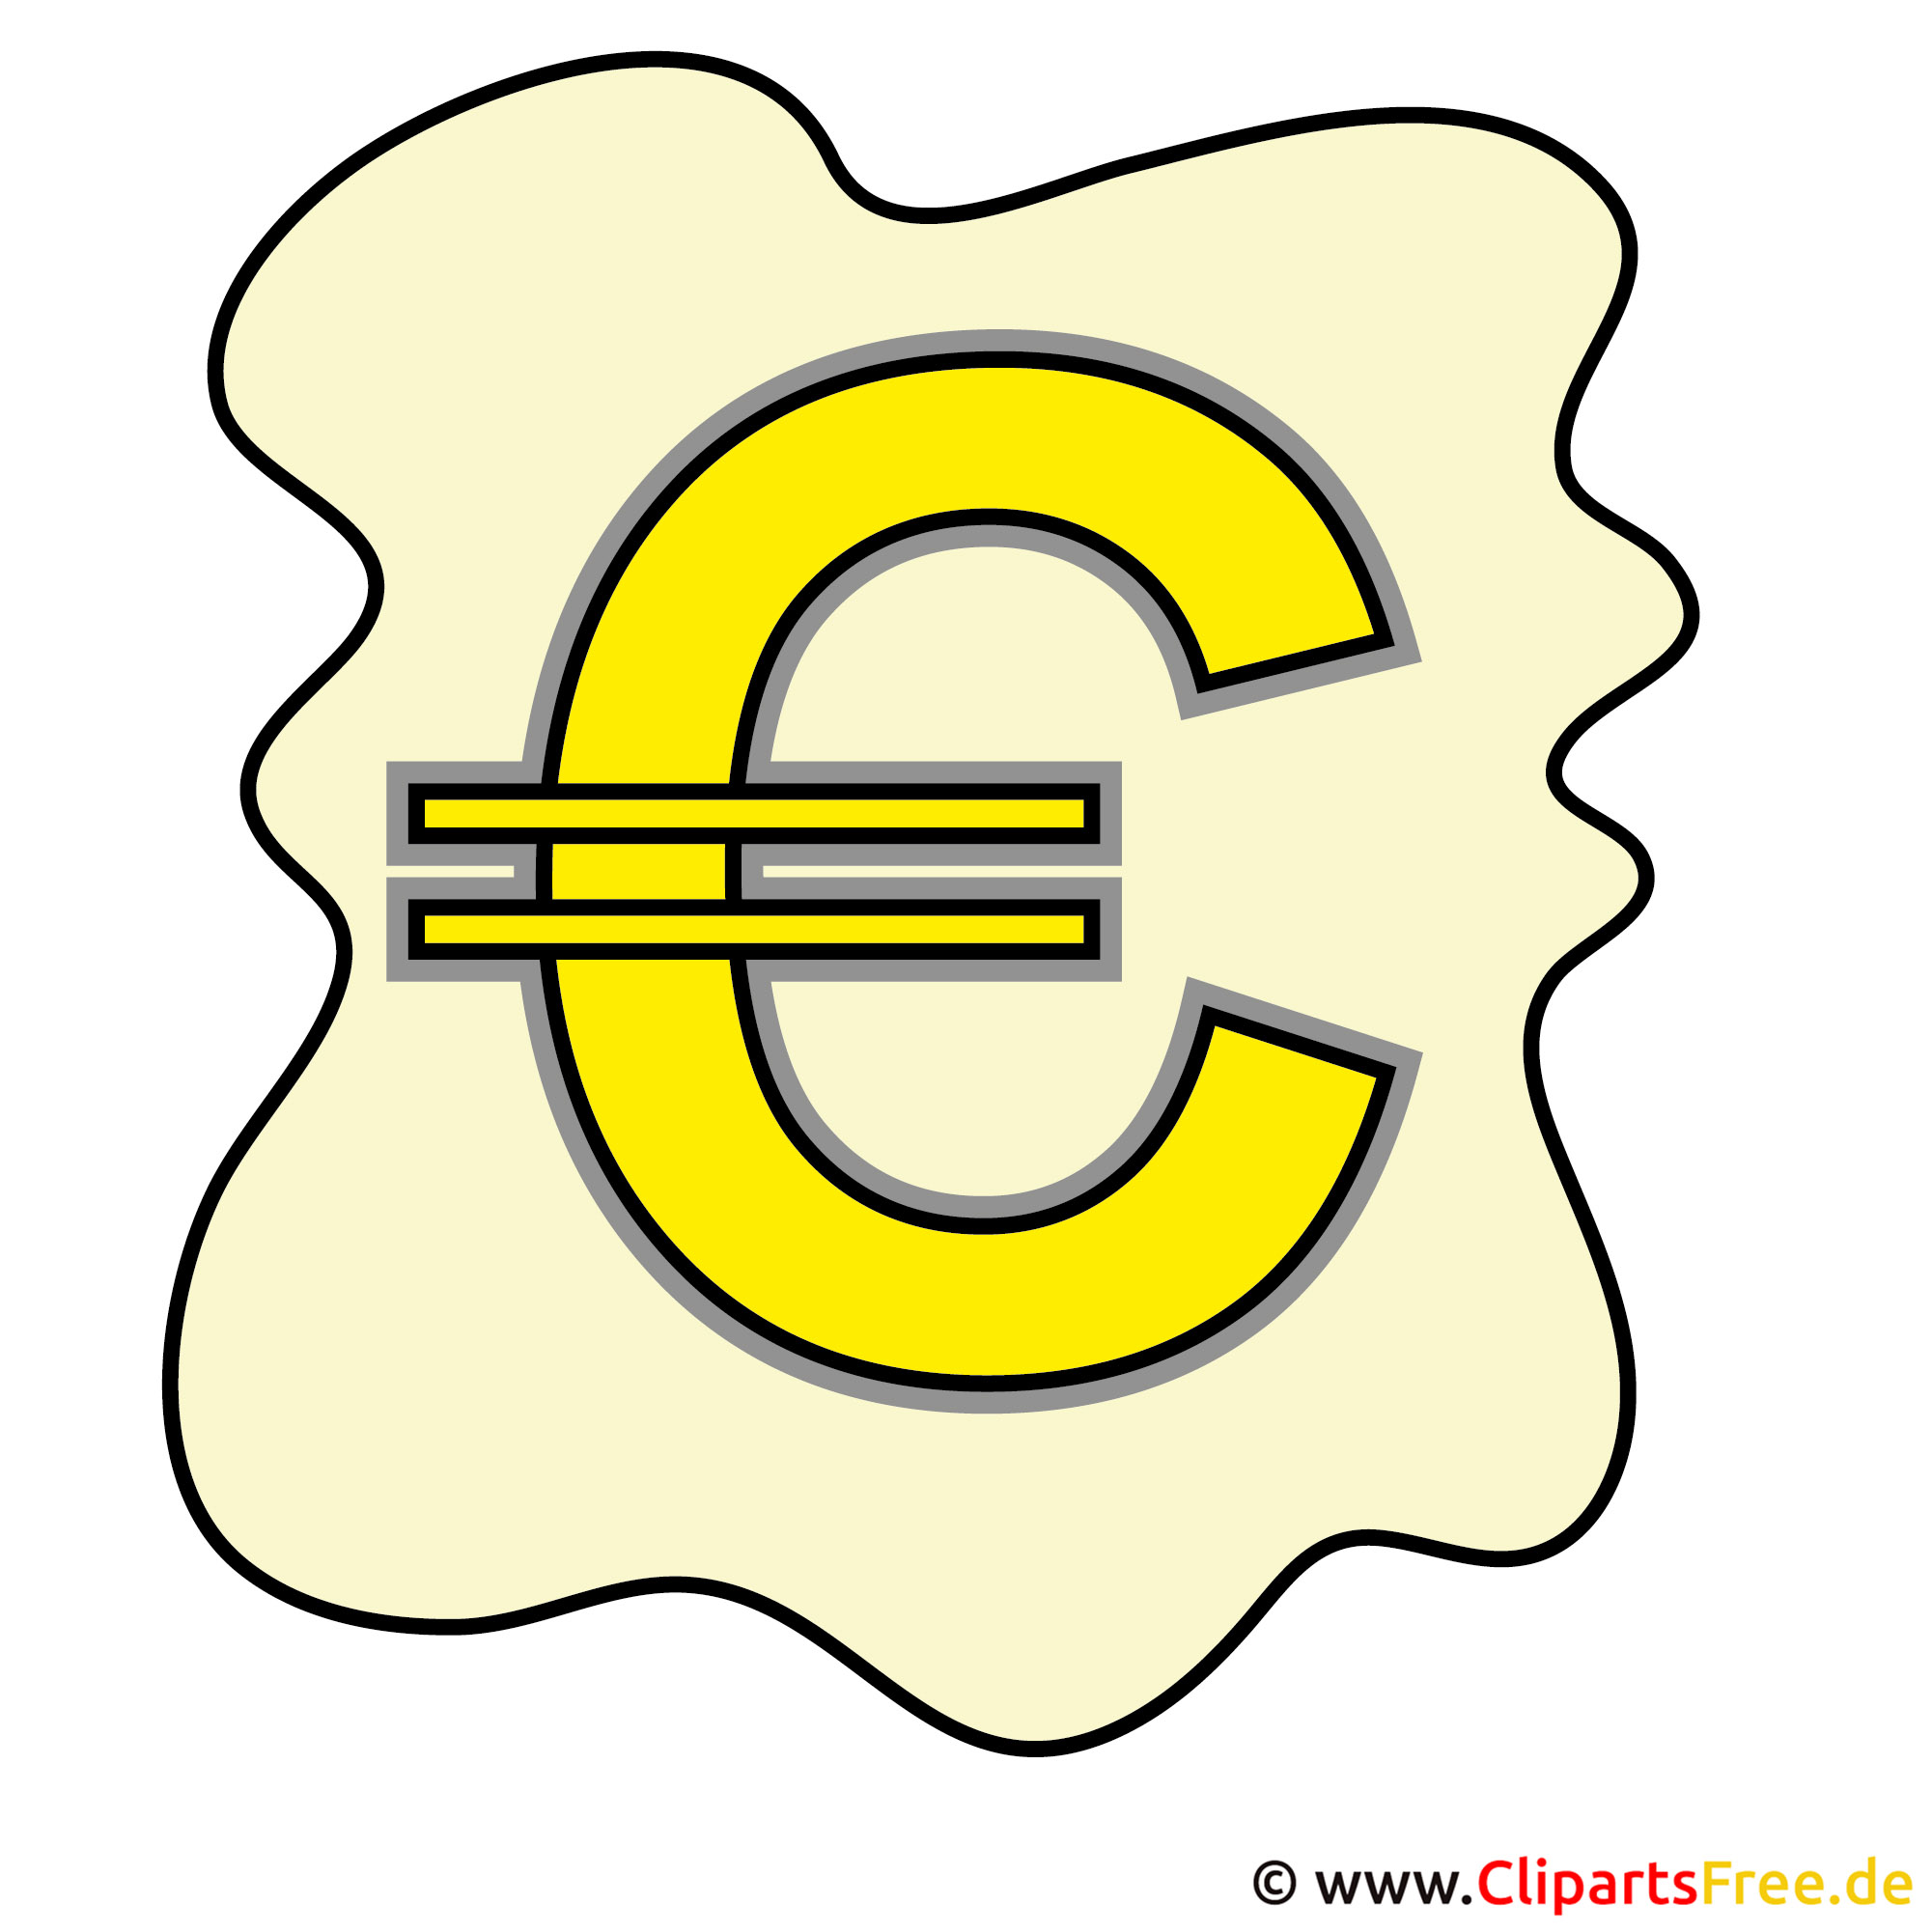 euro coins clipart - photo #50